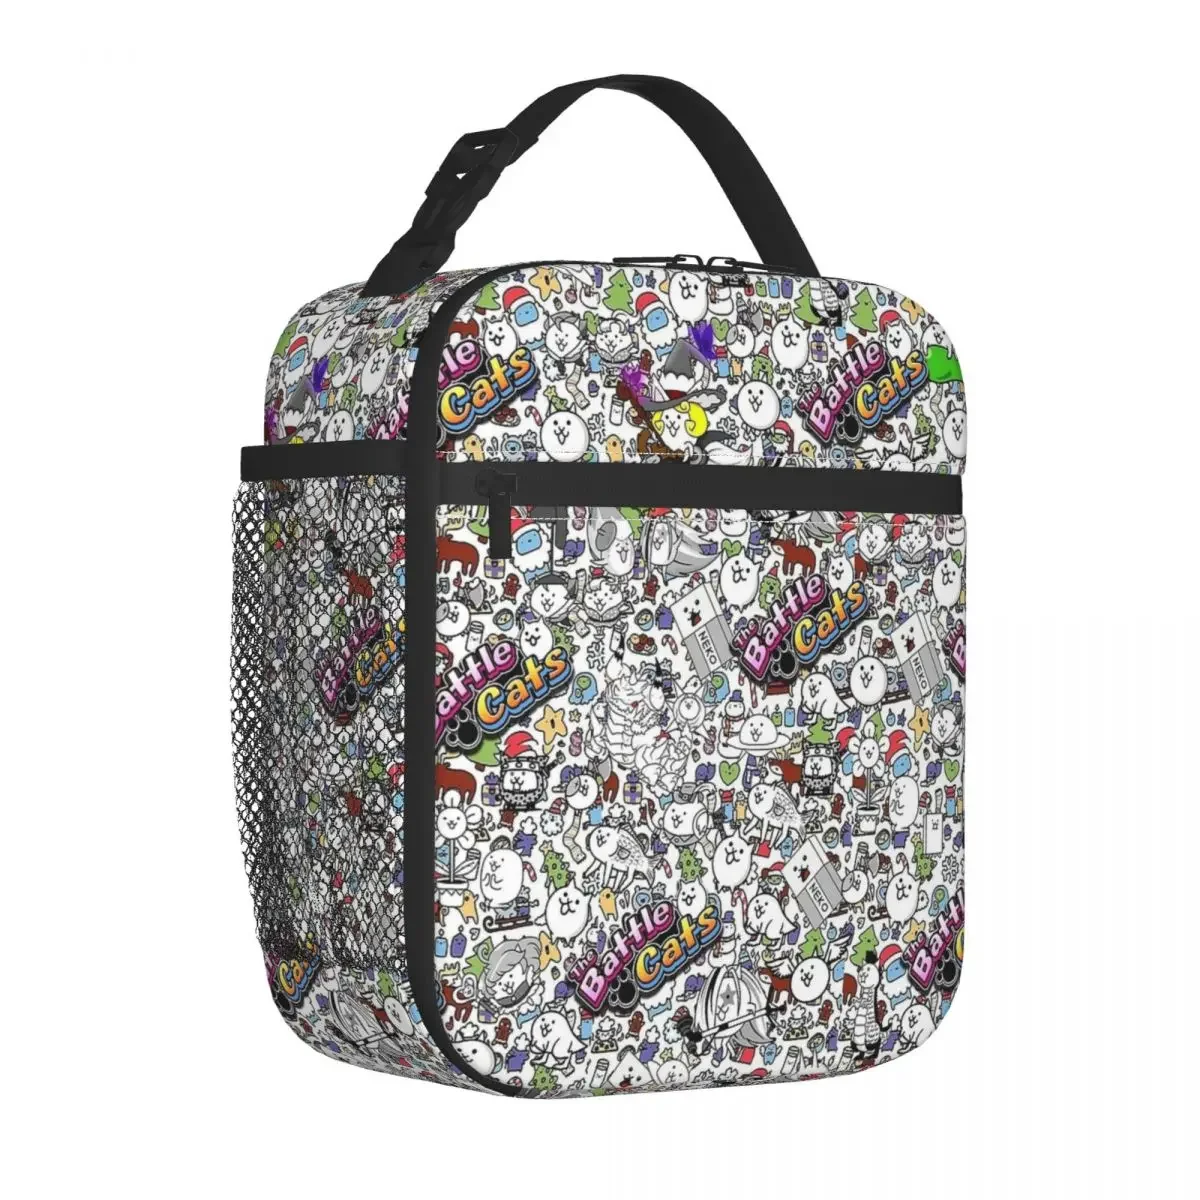 

Изолированная сумка для ланча с изображением боевых кошек и коллажей для аниме-игр, вместительная стандартная сумка-тоут для ланча, школьная сумка для пикника и бенто